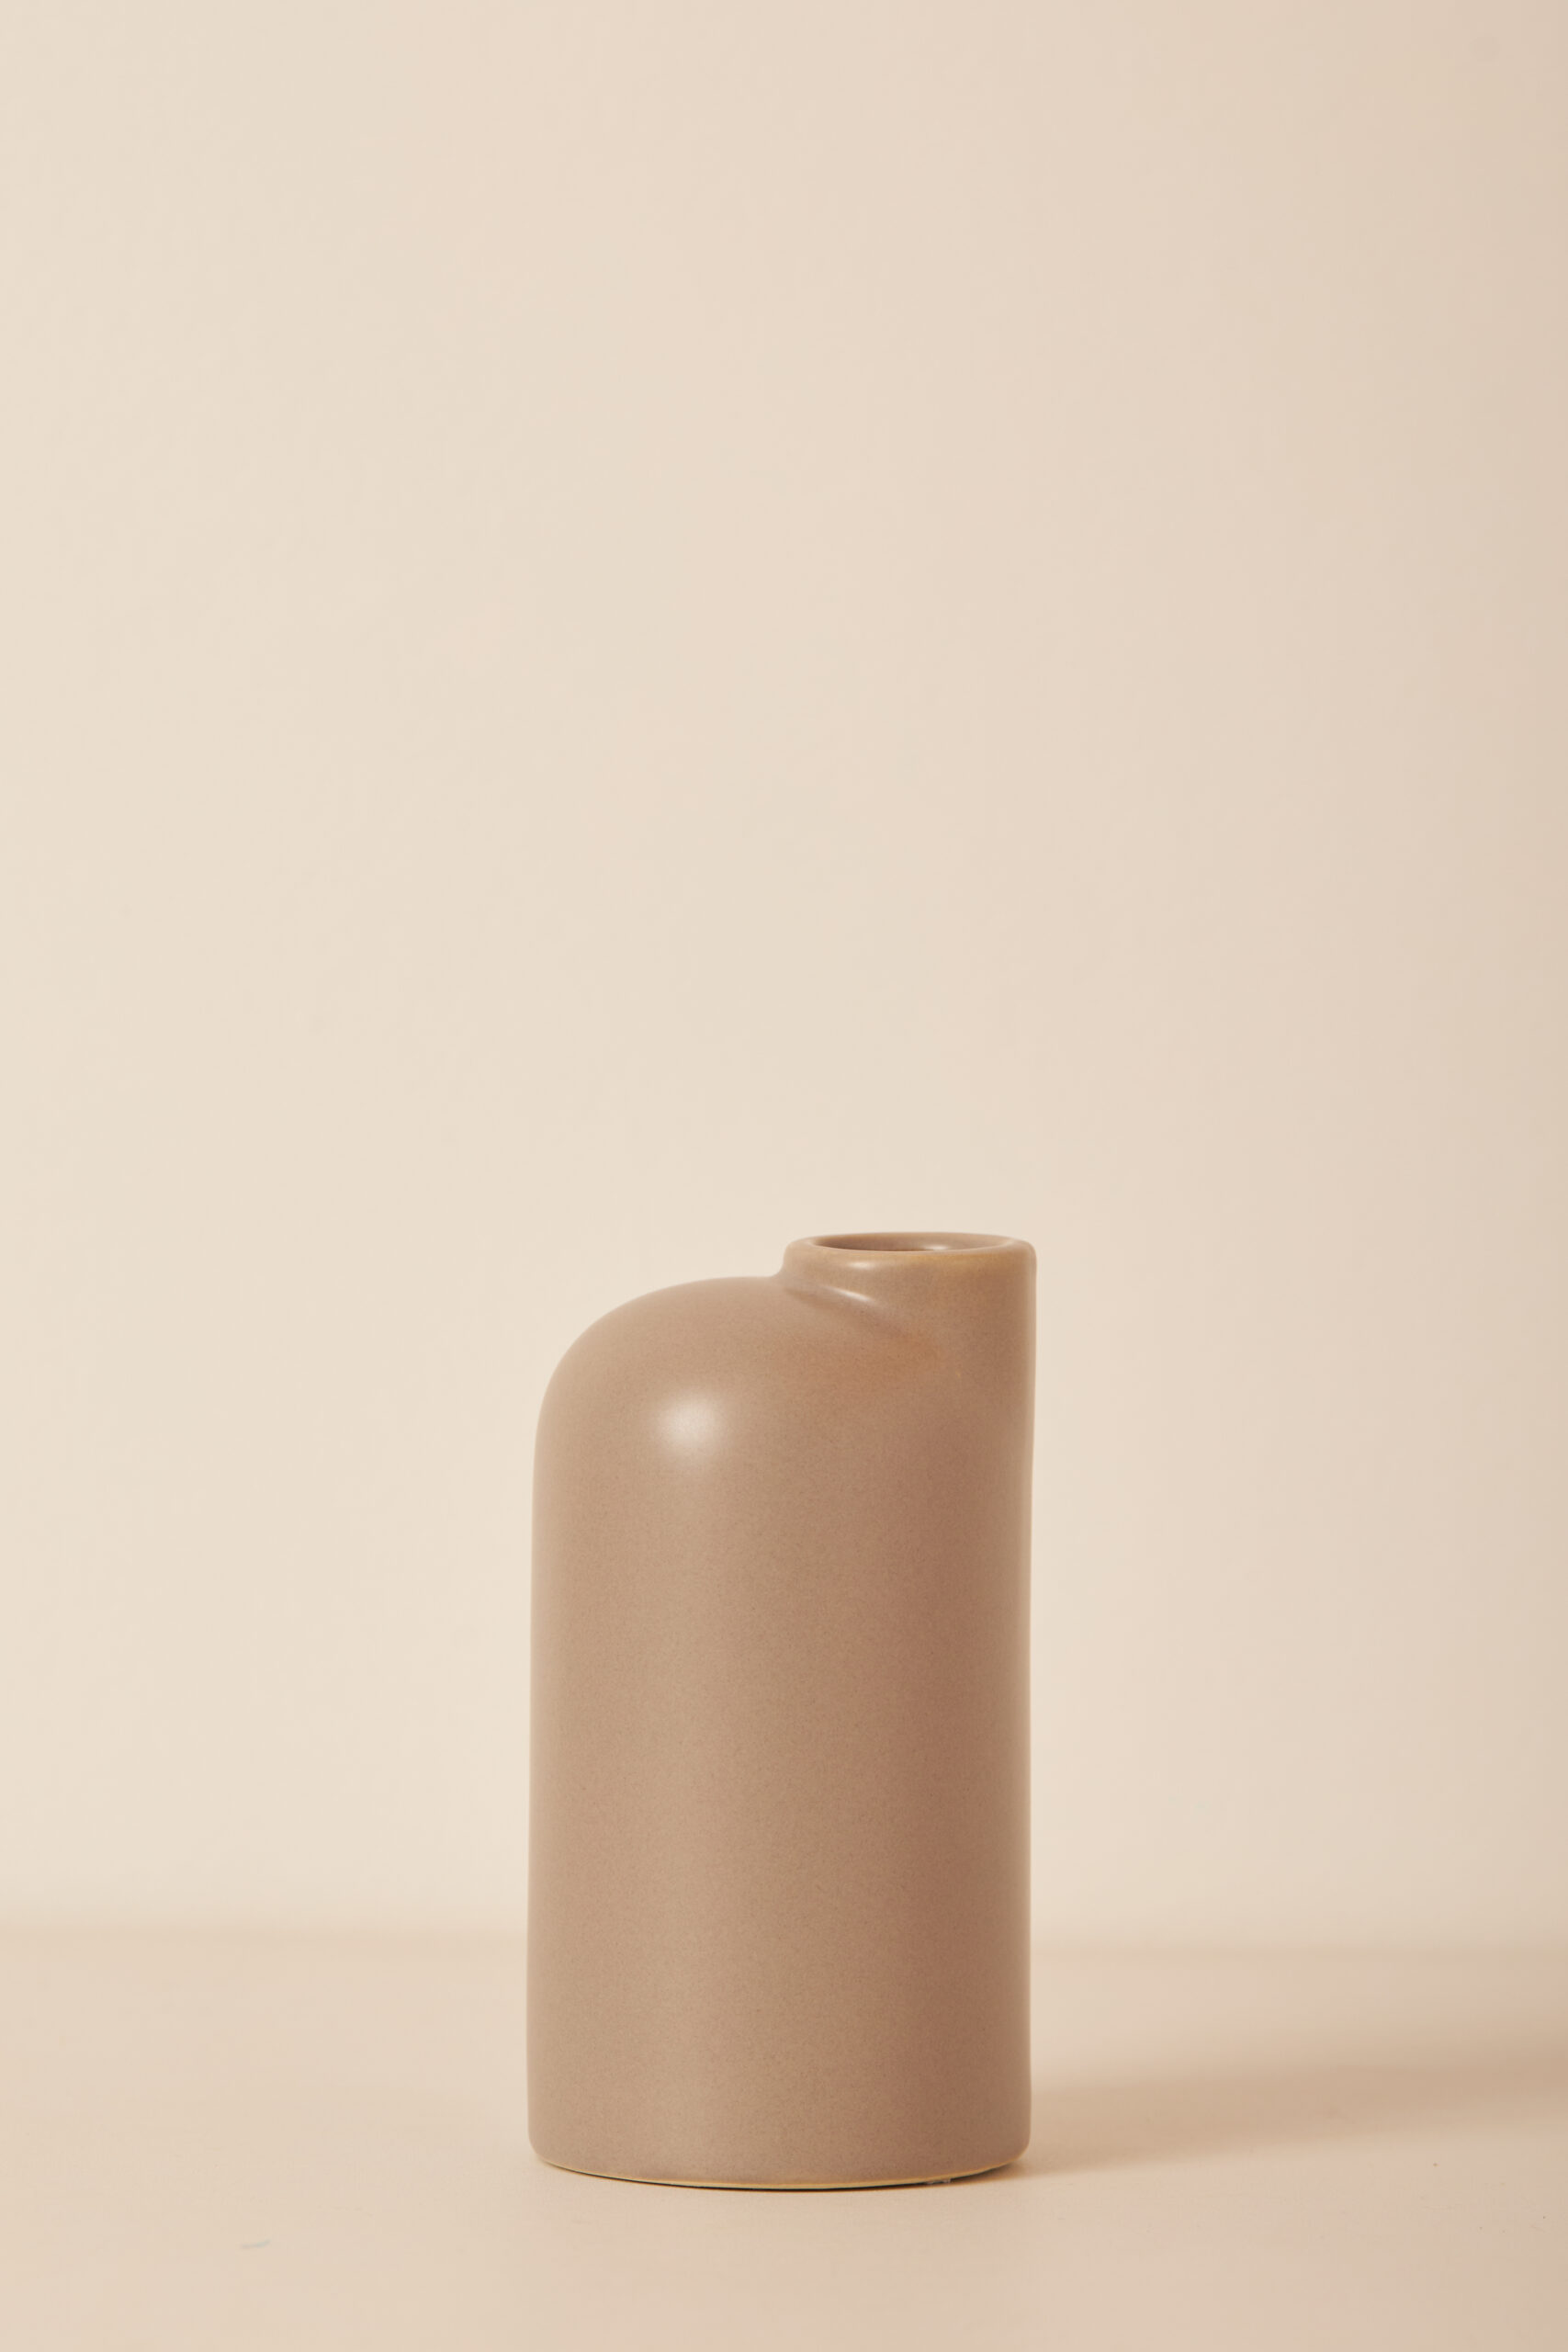 Vaso Cerâmica (15x8)